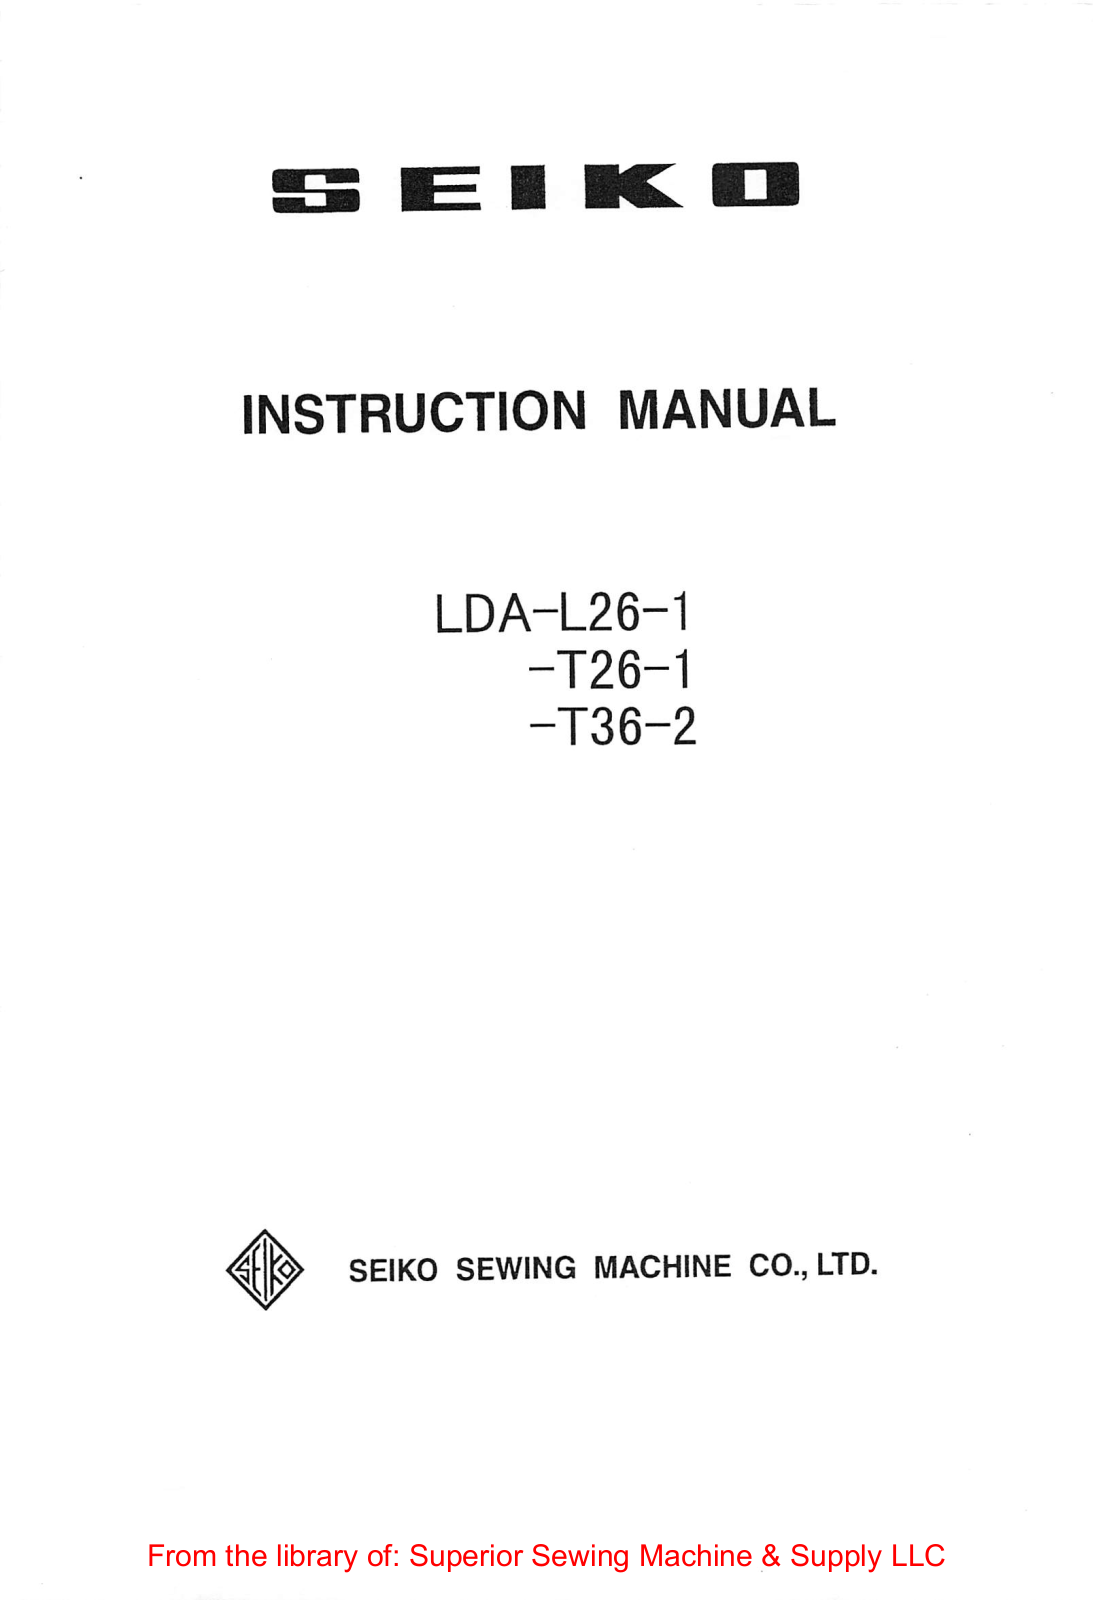 Seiko LDA-L26-1, LDA-T26-1, LDA-T36-2 Instruction Manual